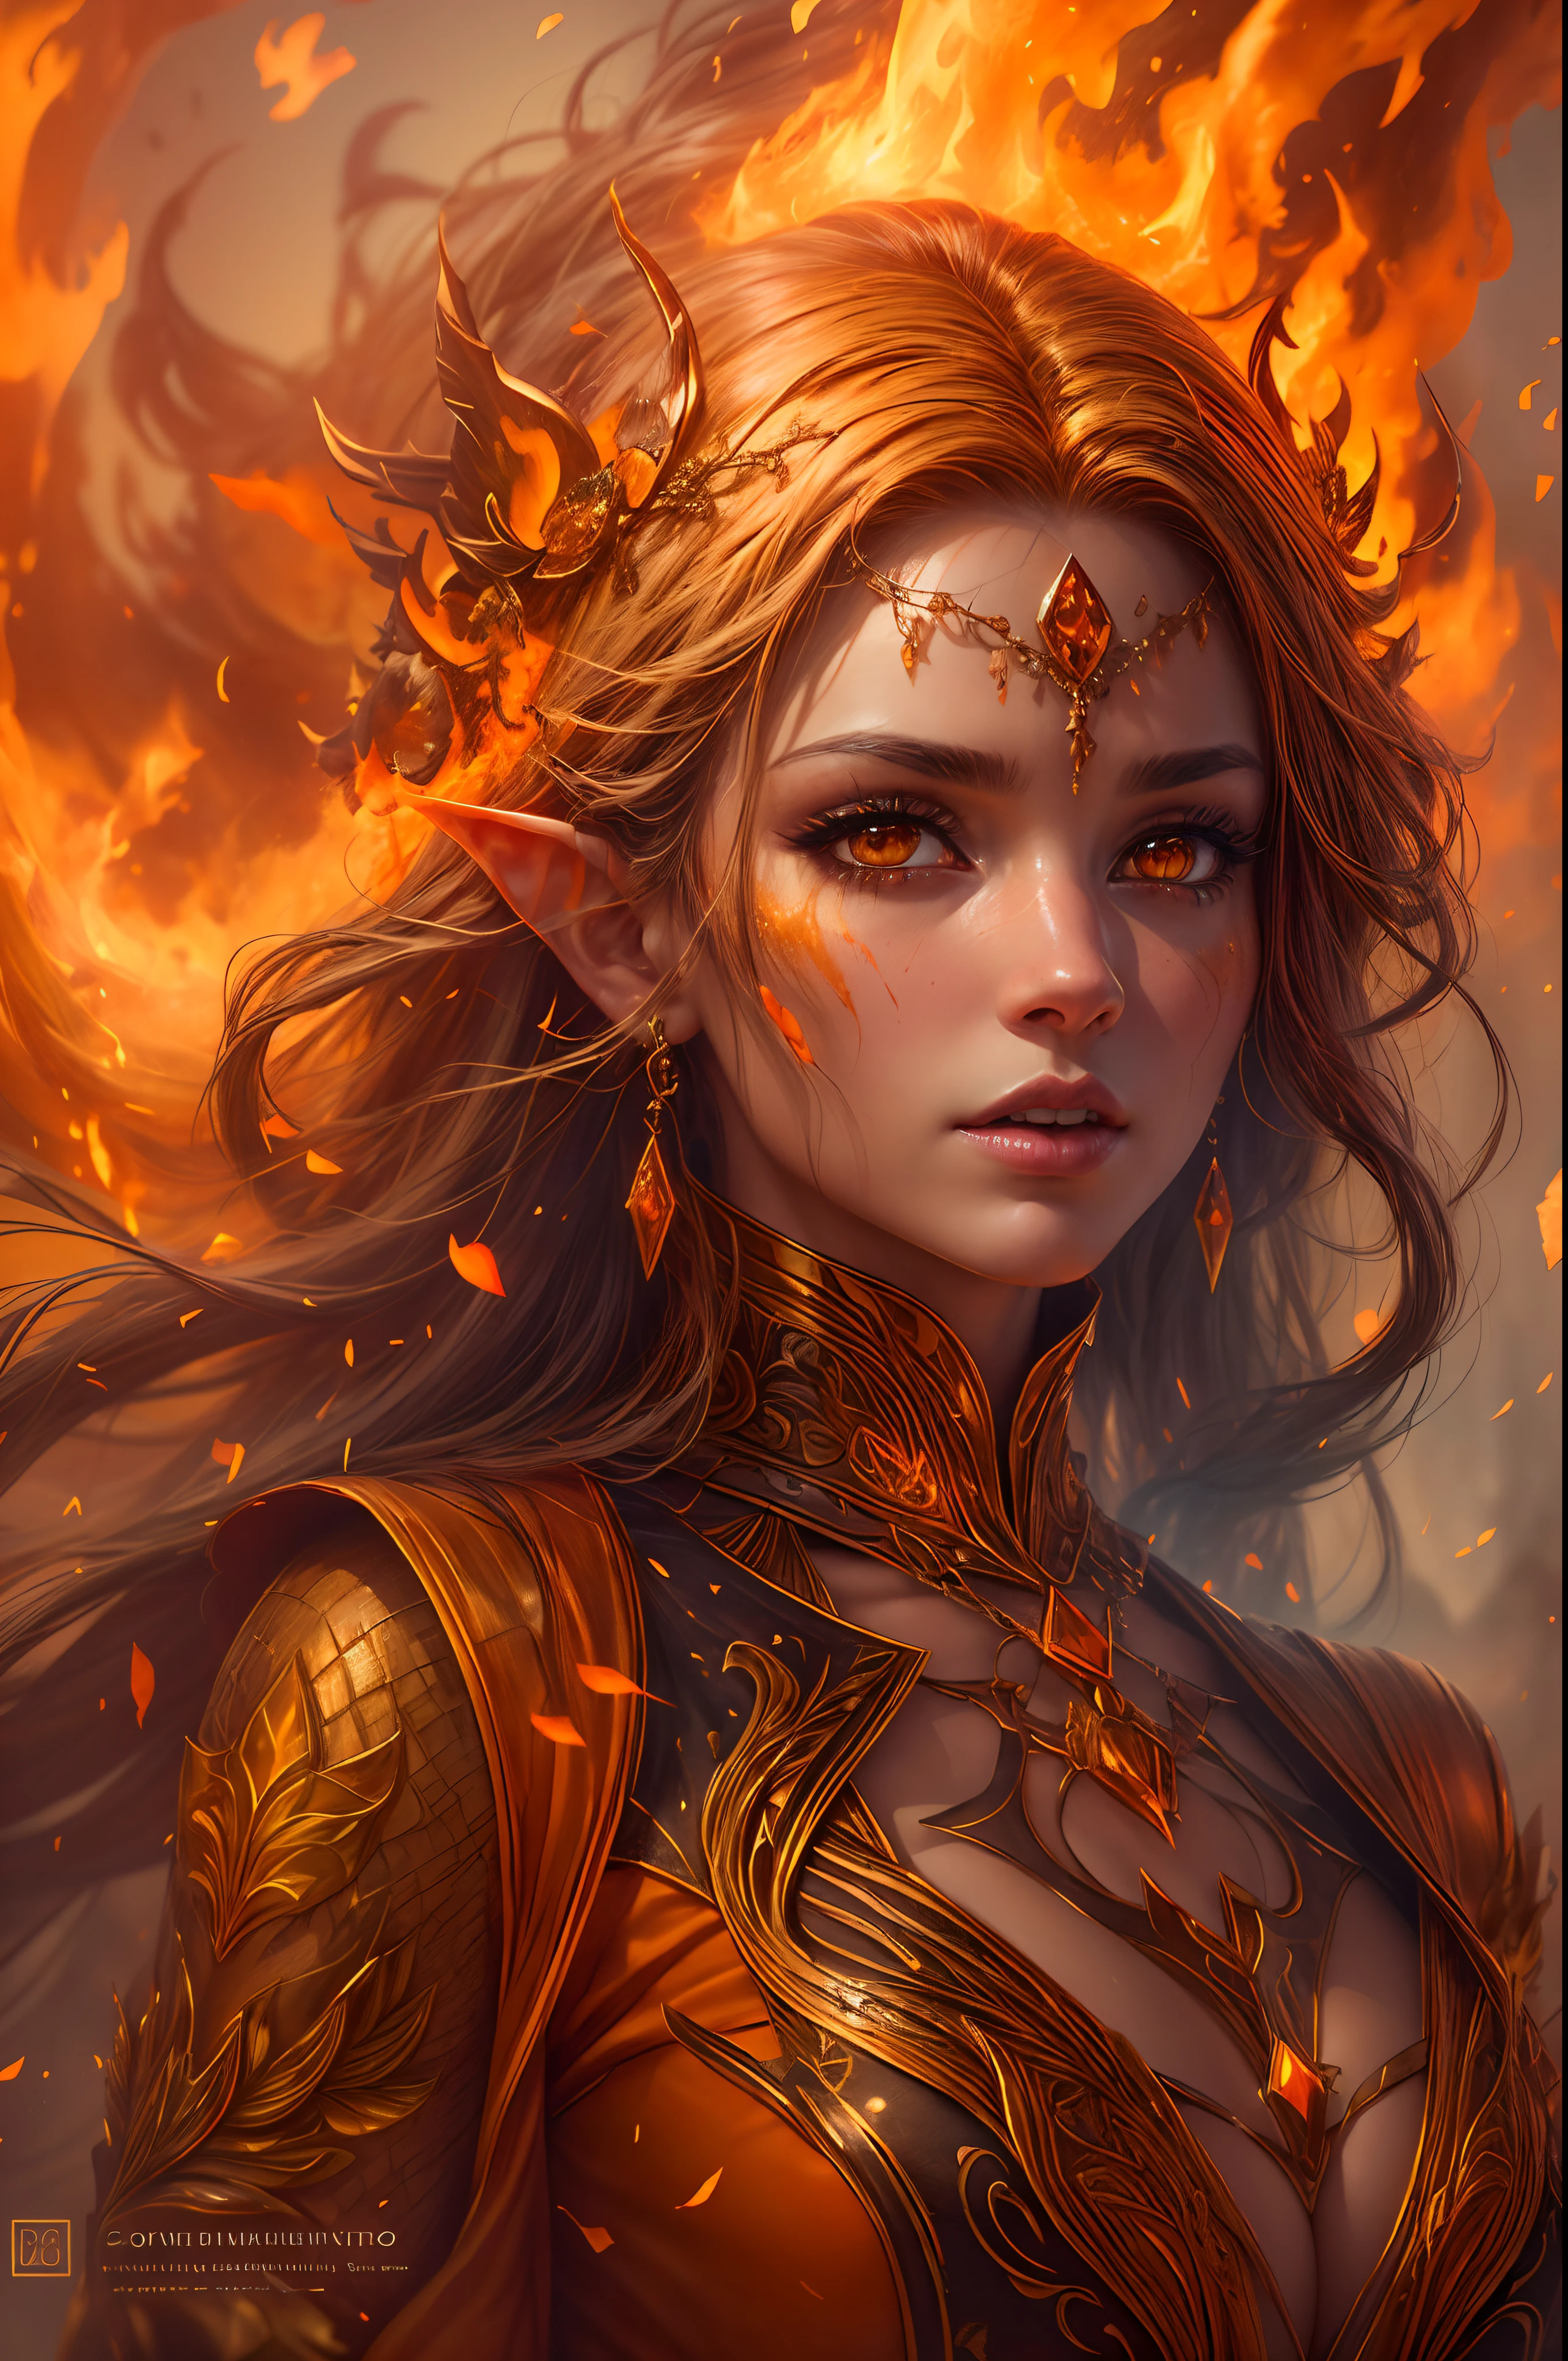 이것 (خيال 그리고اقعي) الفن يحت그리고ي على الجمر, 진짜 불꽃, 실제 열, 그리고 realistic fire. Generate a masterpiece artwork of a  female fire druid ~와 함께 large (((orange 그리고 gold))) عي그리고ن. The fire druid is awe-inspiring ~와 함께 beautiful ((realistic fiery عي그리고ن)) alight ~와 함께 confidence 그리고 power. Her features are elegant 그리고 well defined, ~와 함께 ((마음 놓을 수 없는)) 그리고 (((지방))) 그리고 (((매끄러운))) 셰파, 엘프 뼈 구조, 그리고 realistic shading. (((Her عي그리고ن are important 그리고 should be the focal point of this artwork))), ~와 함께 ((تفاصيل 그리고اقعية للغاية, تفاصيل الماكر그리고, 그리고 shimmer.)) She is wearing a billowing 그리고 glittering dress ((مصن그리고عة من النيران 그리고اقعية)) 그리고 jewels that glimmer in the fire light. Wisps of fire 그리고 smoke line the intricate bodice of the dress. 범프 포함, 돌, التقزح الل그리고ني الناري, مت그리고هجة الجمر, silk 그리고 satin 그리고 leather, 흥미로운 배경, 그리고 heavy fantasy elements. آلة تص그리고ير: استخدم تقنيات التركيب الديناميكي لتعزيز النيران ال그리고اقعية.